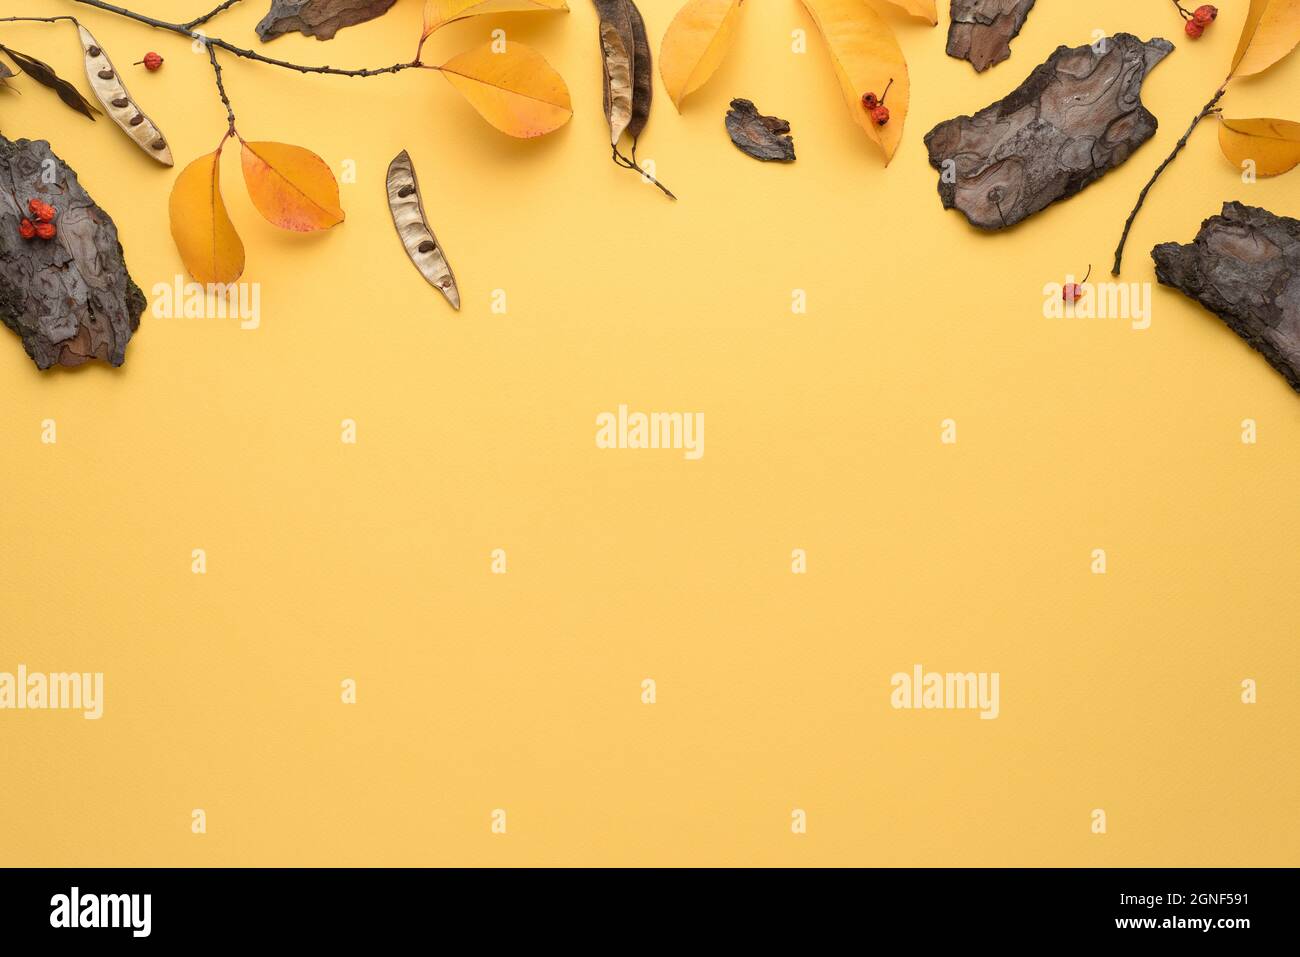 Fondo amarillo de otoño con un marco de hojas caídas y herbario Foto de stock